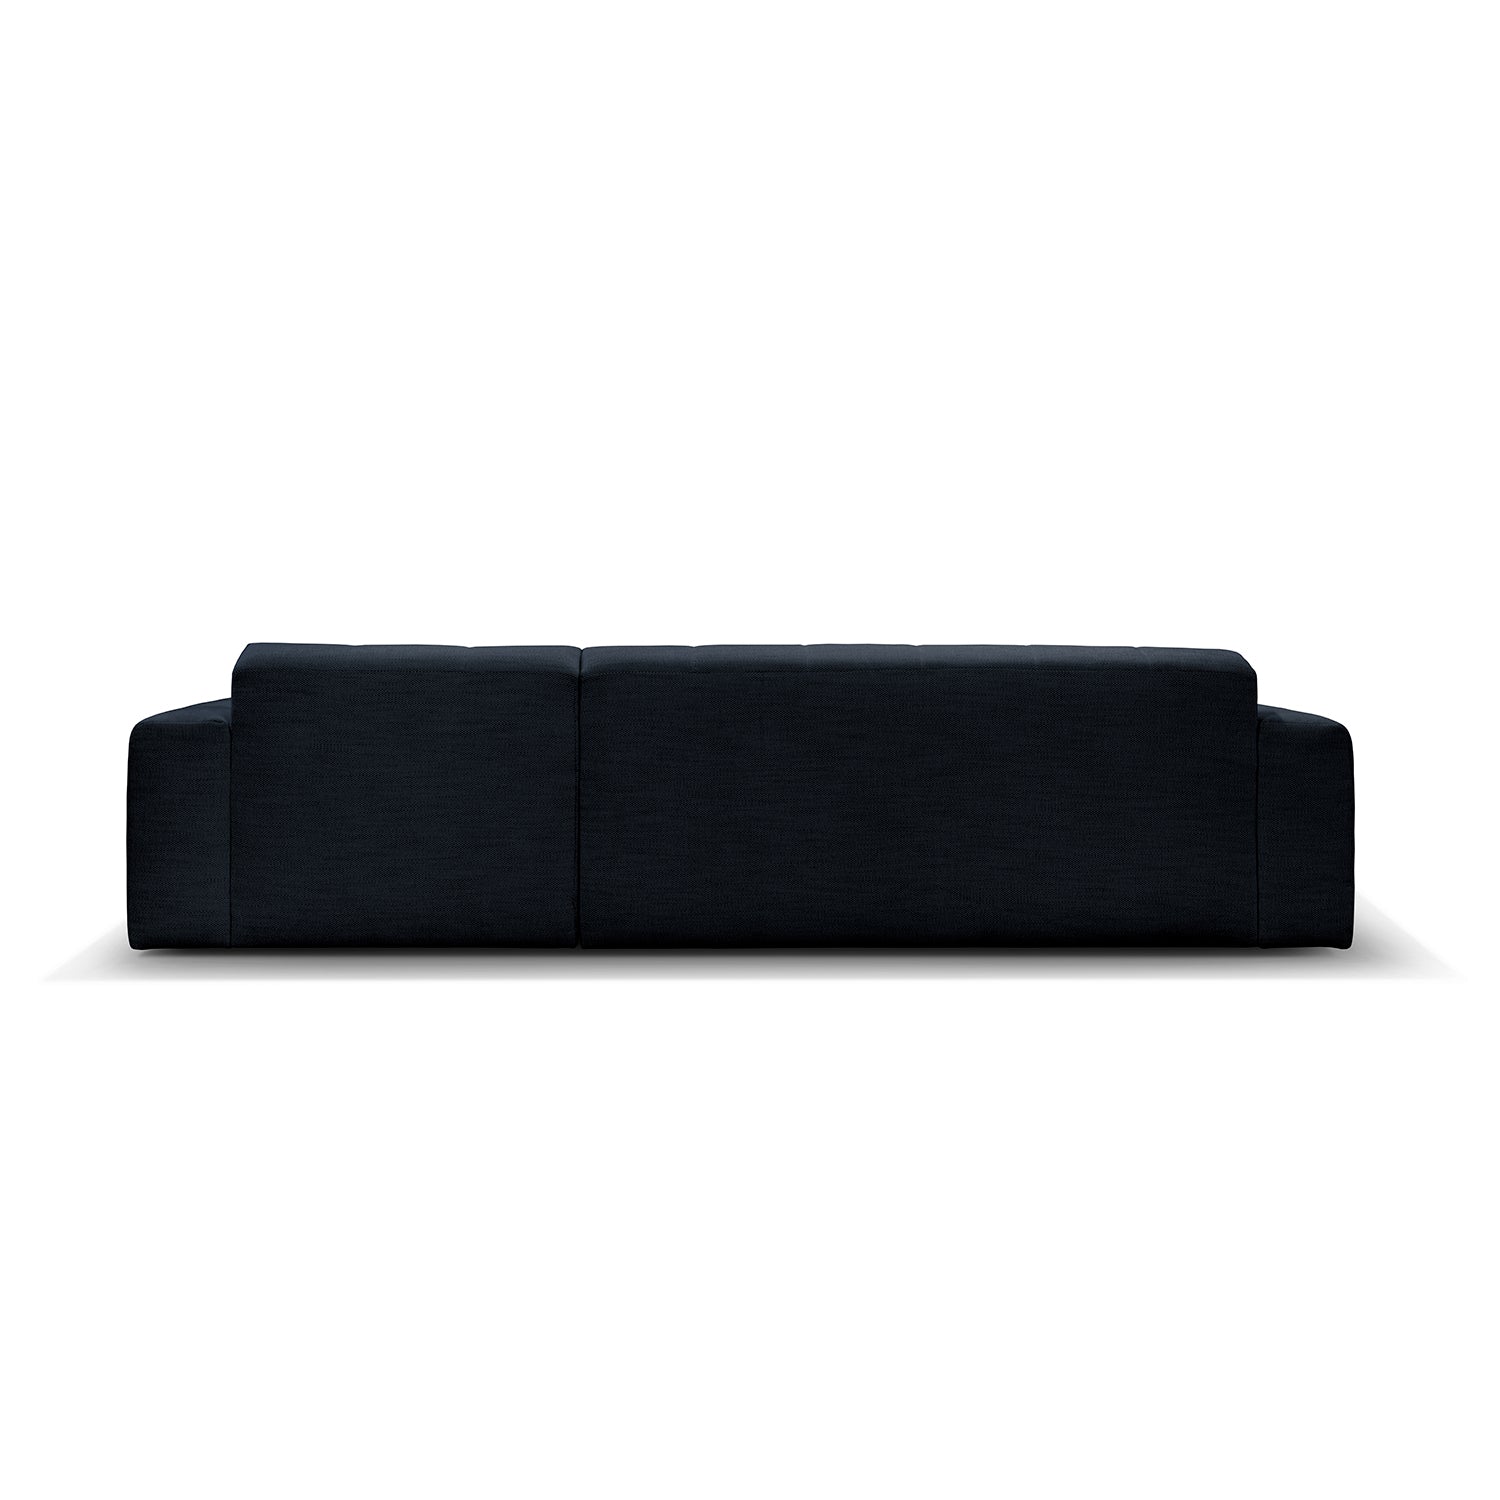 Paris chaiselong sofa højrevendt - Møbelkompagniet